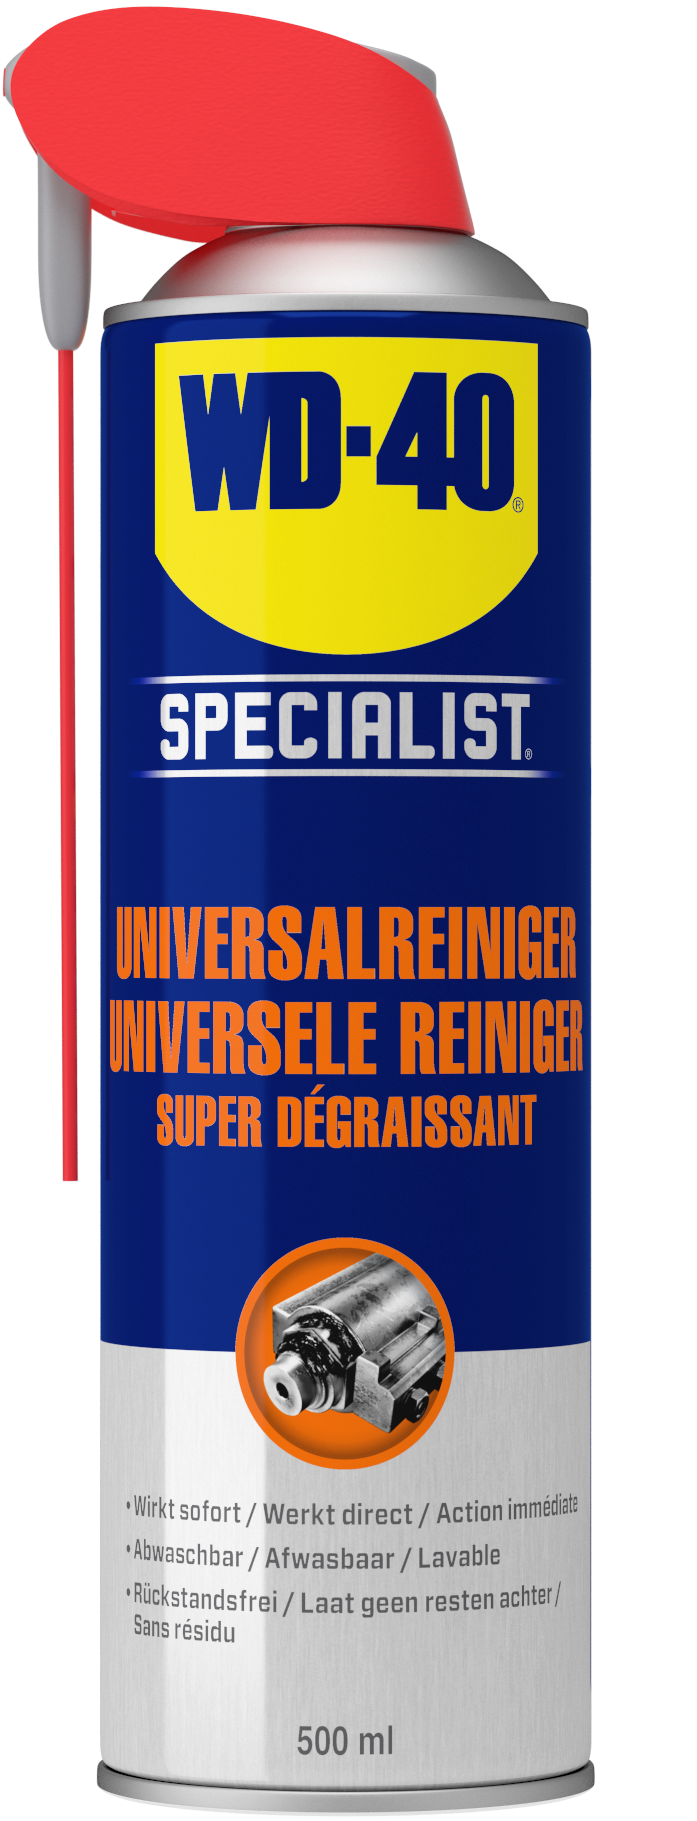 WD 49392 WD-40 Specialist Universele Reiniger is een op oplosmiddel gebaseerde reiniger die hardnekkige vervuilingen zoals olie, vet, vuil en ander viezigheid snel verwijdert.